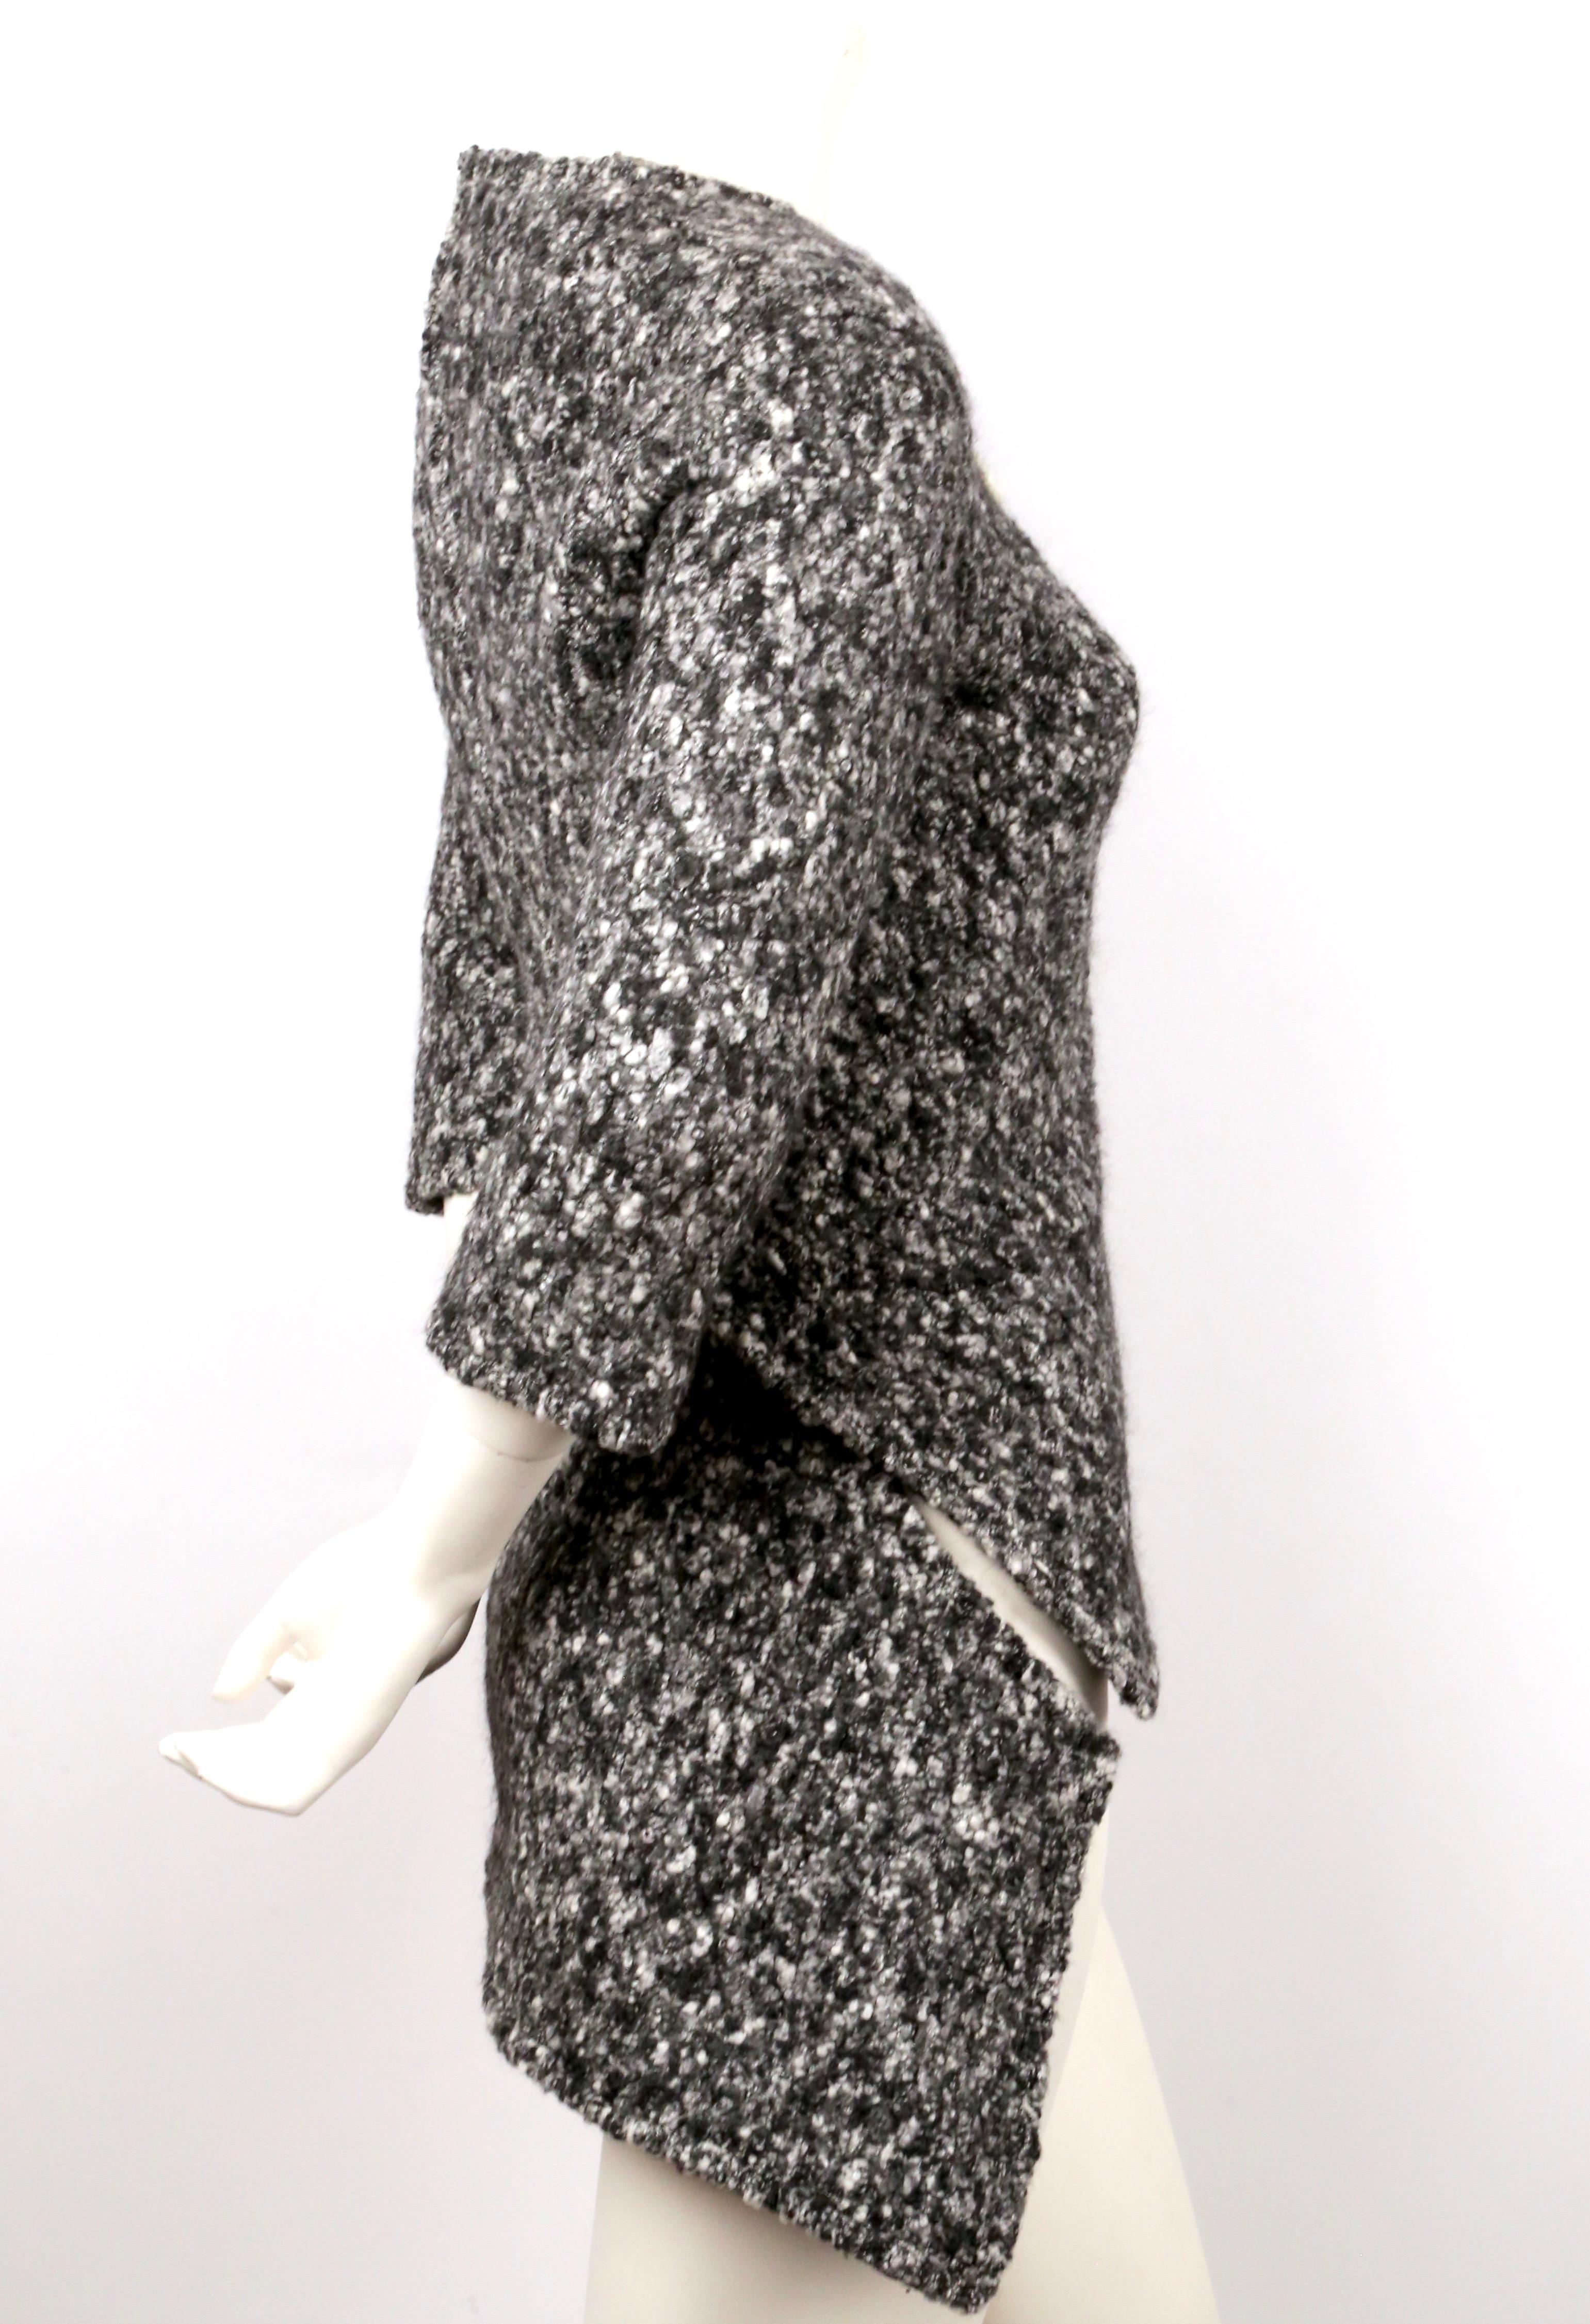 Grau marmorierter Boucle-Strickpullover mit asymmetrischem Druckknopfverschluss, entworfen von Phoebe Philo für Celine, genau wie auf dem Laufsteg 2014 zu sehen. Etikettiert mit der französischen Größe 38. Ungefähre Maße: Schulter 16